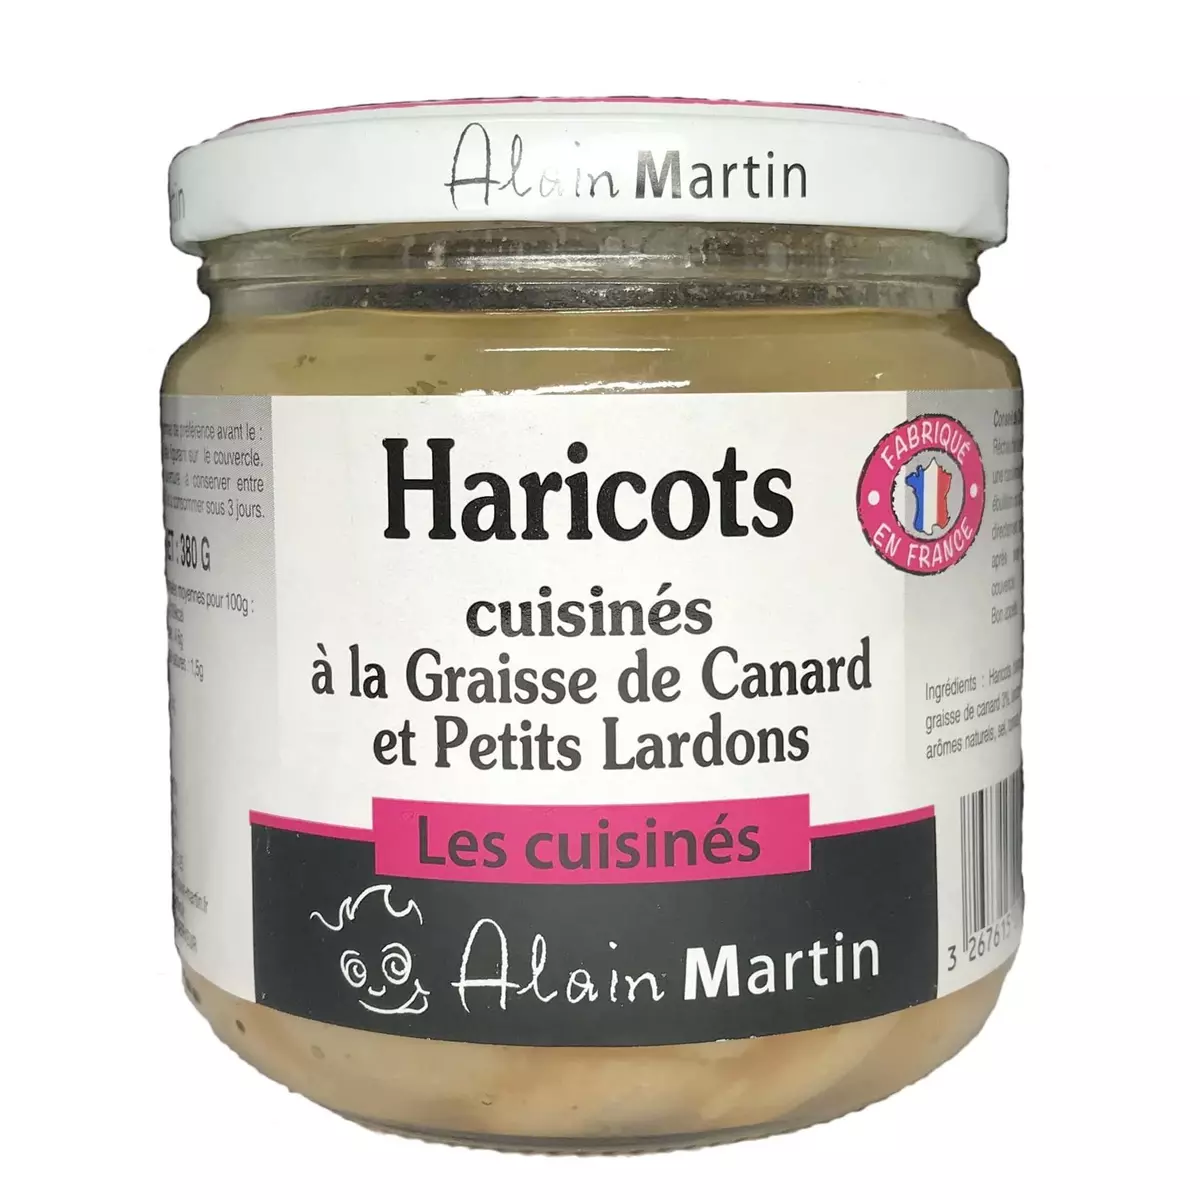 ALAIN MARTIN Haricots cuisinés à la graisse de canard et petits lardons 380g